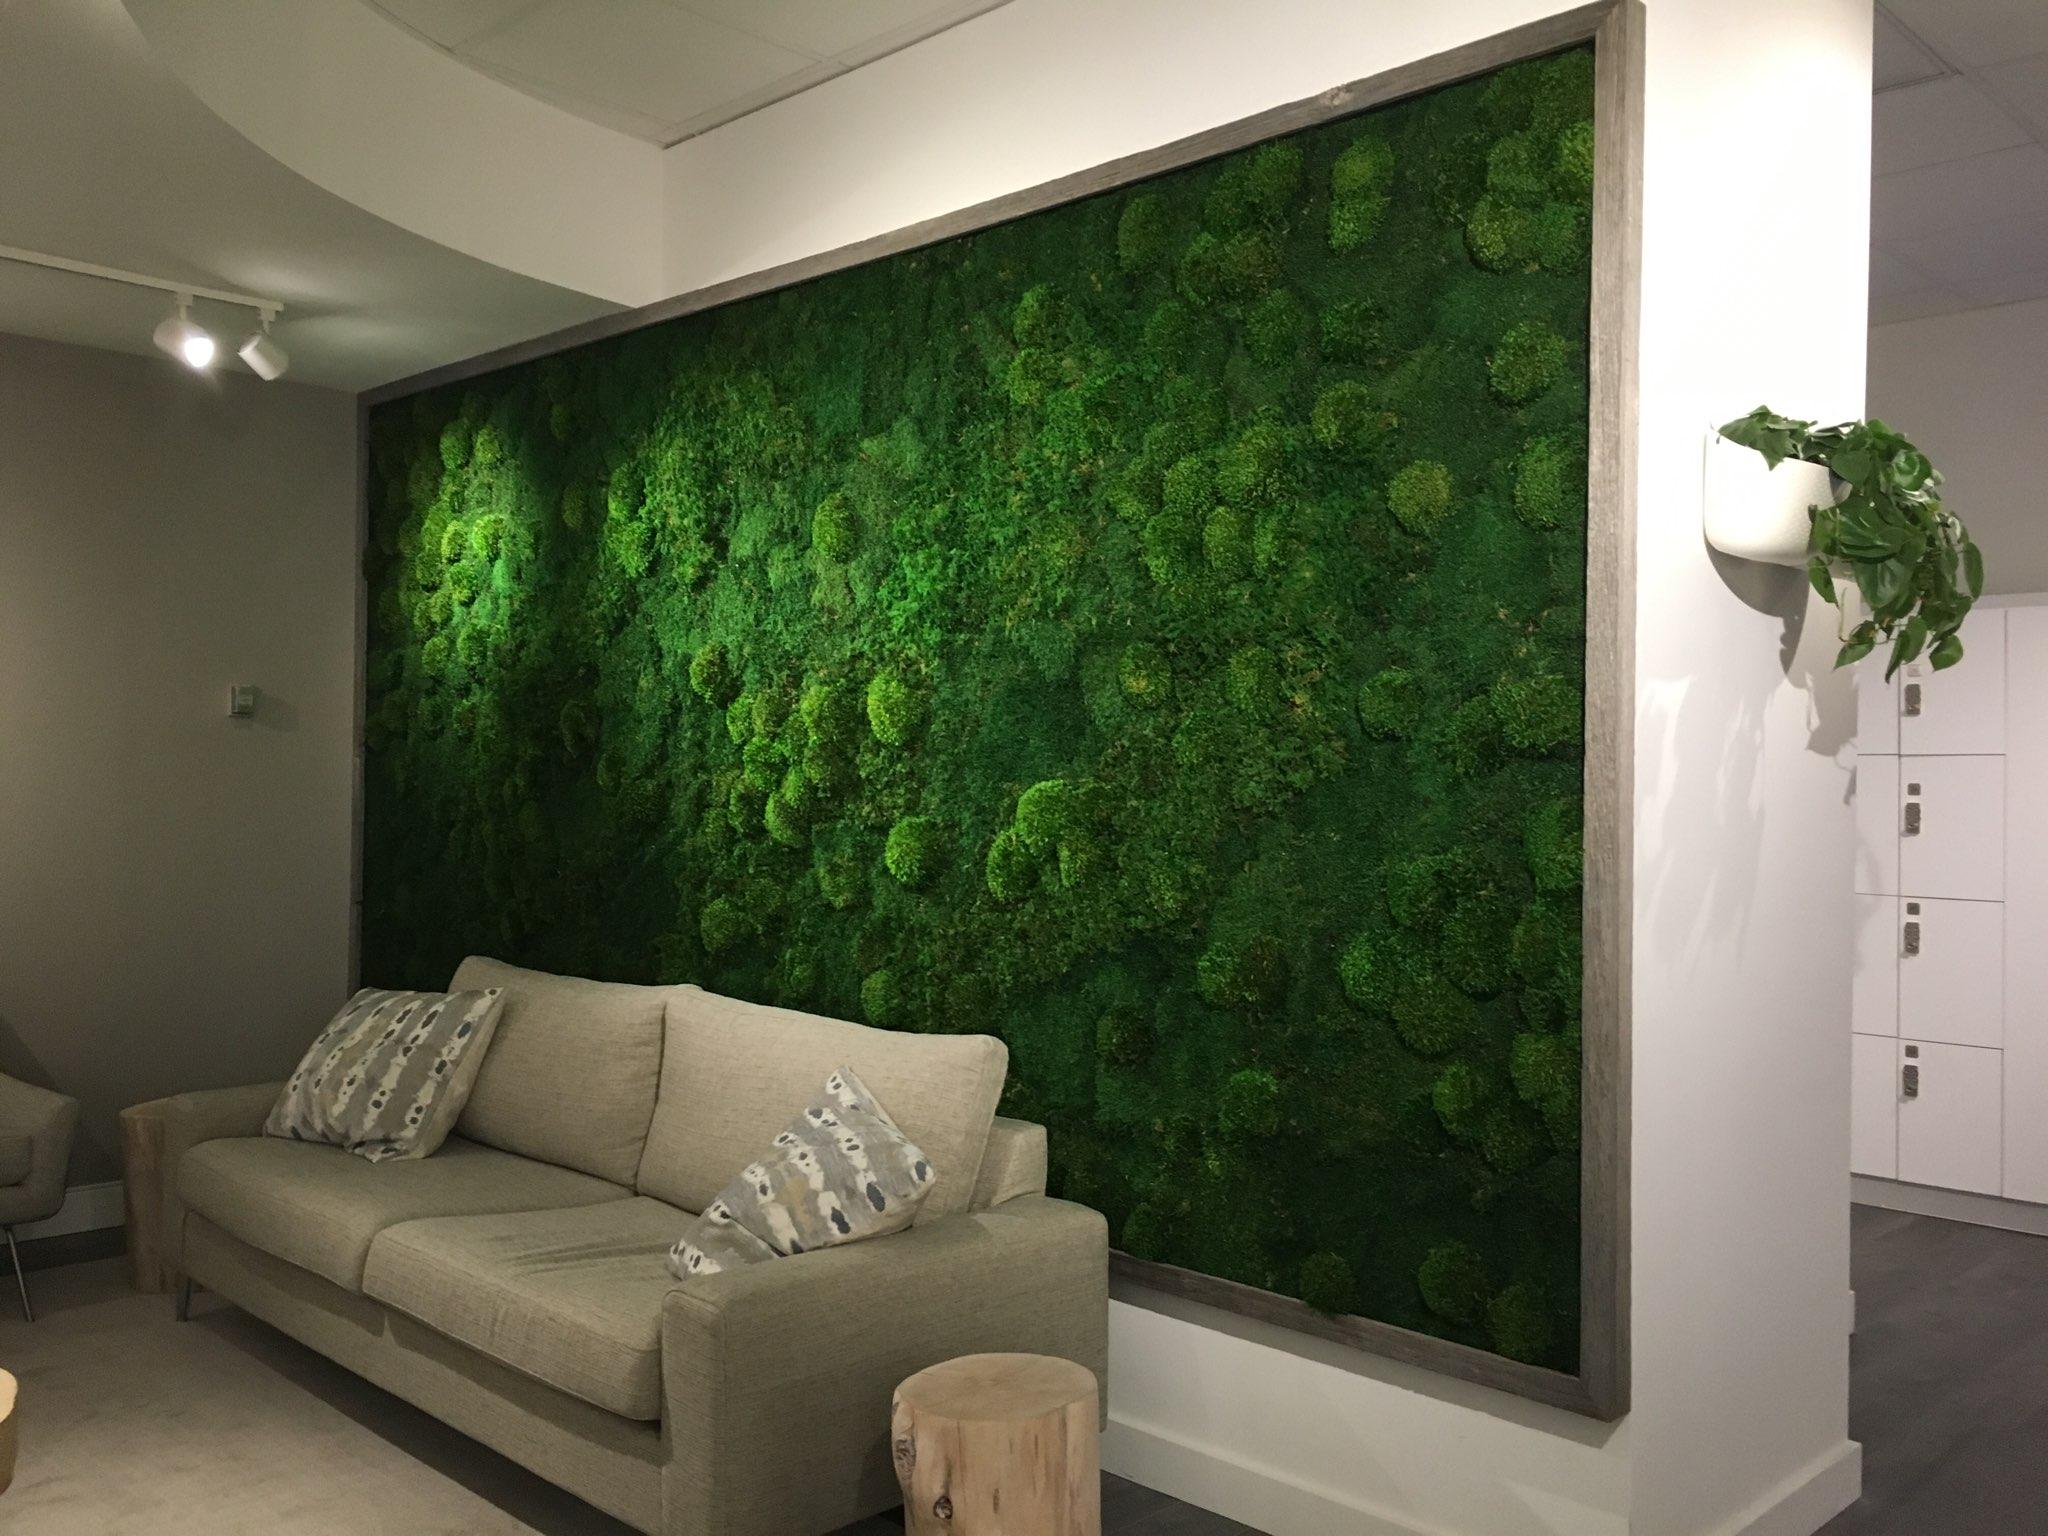 Moss wall - an original decoration